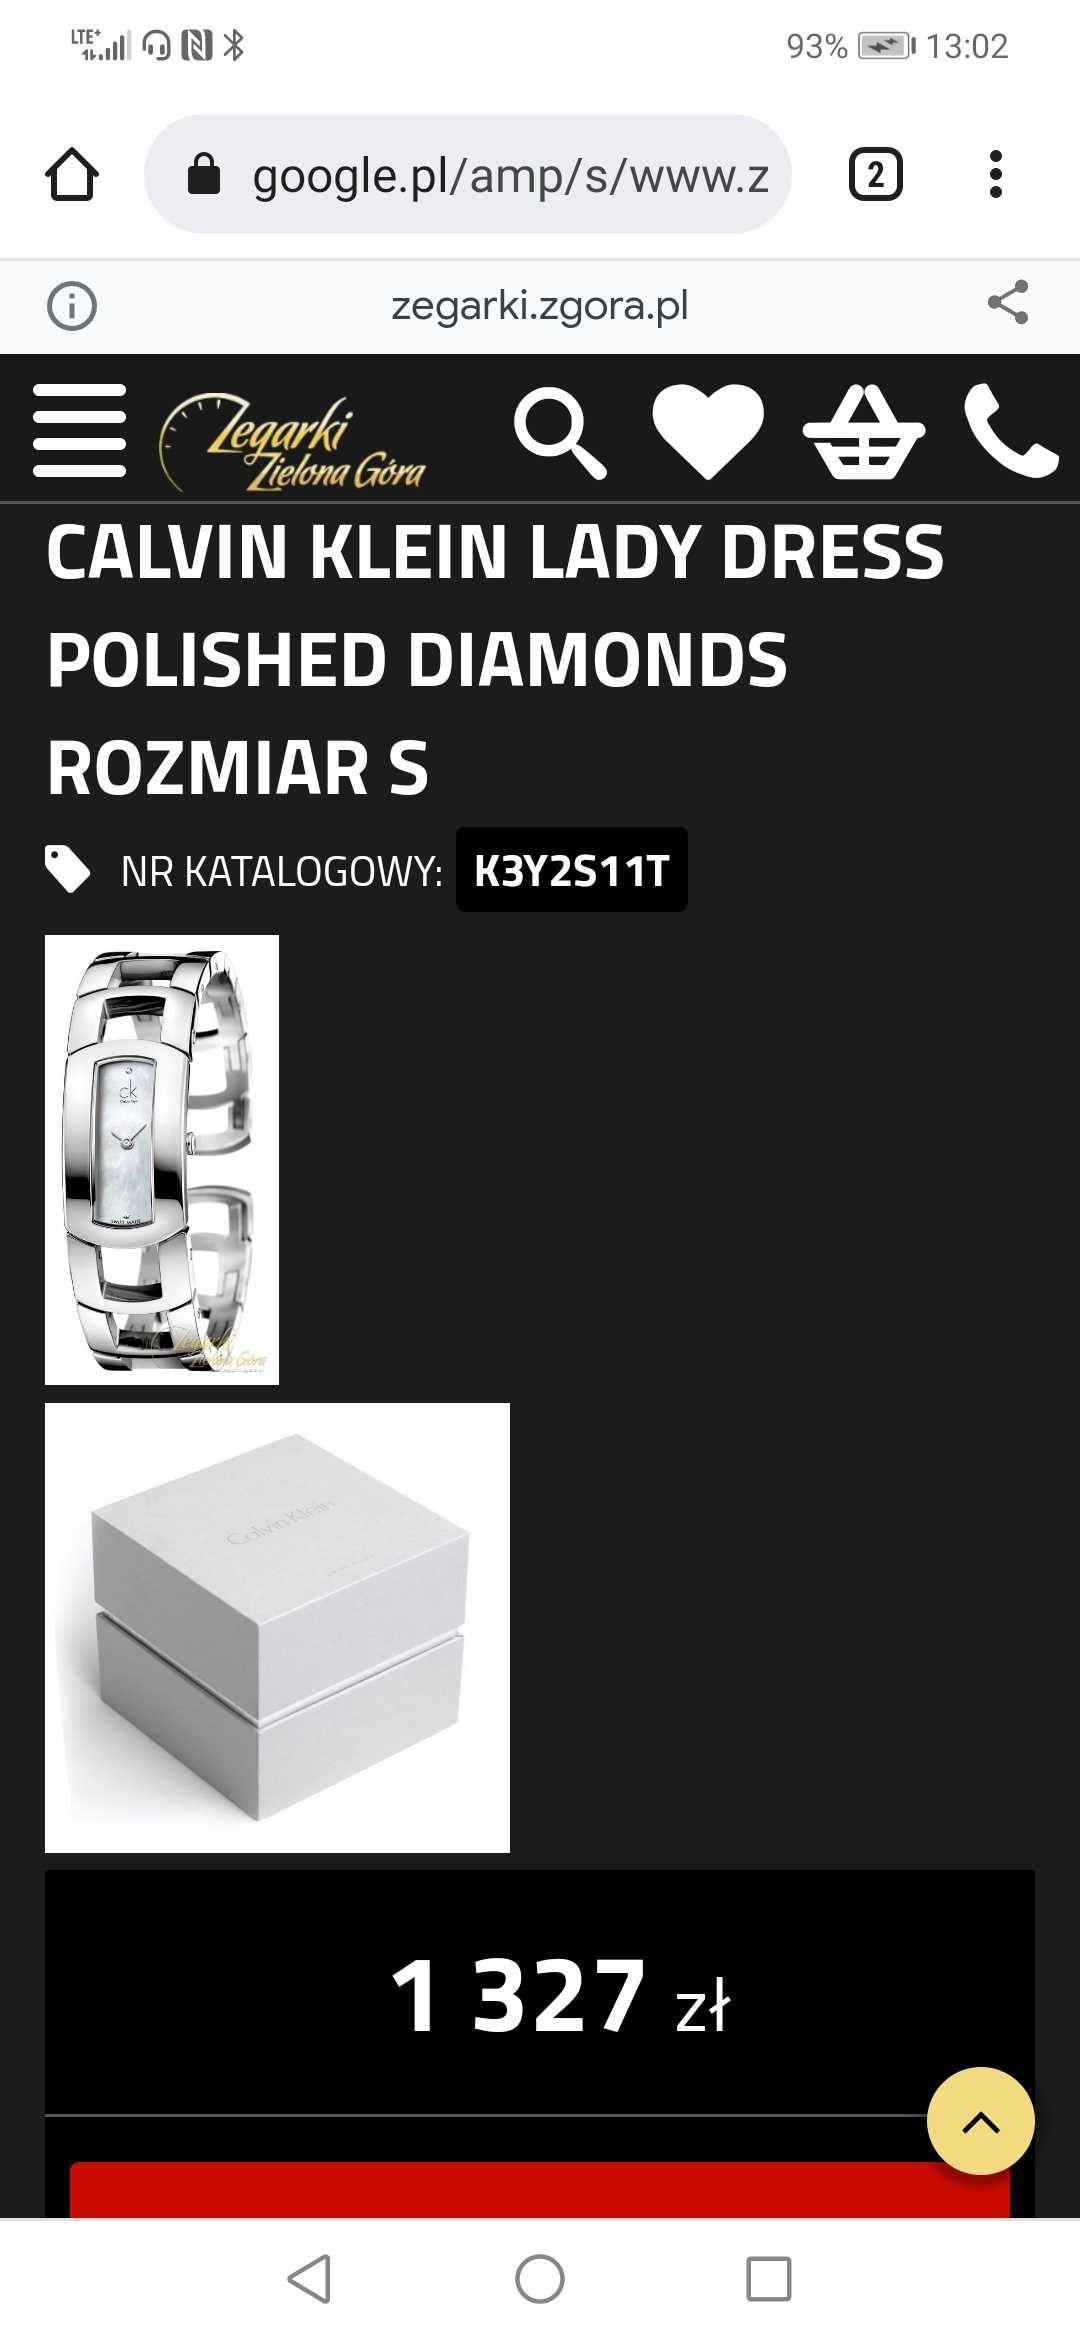 Zegarek damski Calvin Klein Lady Dress Polish Diamonds k3y2s11t